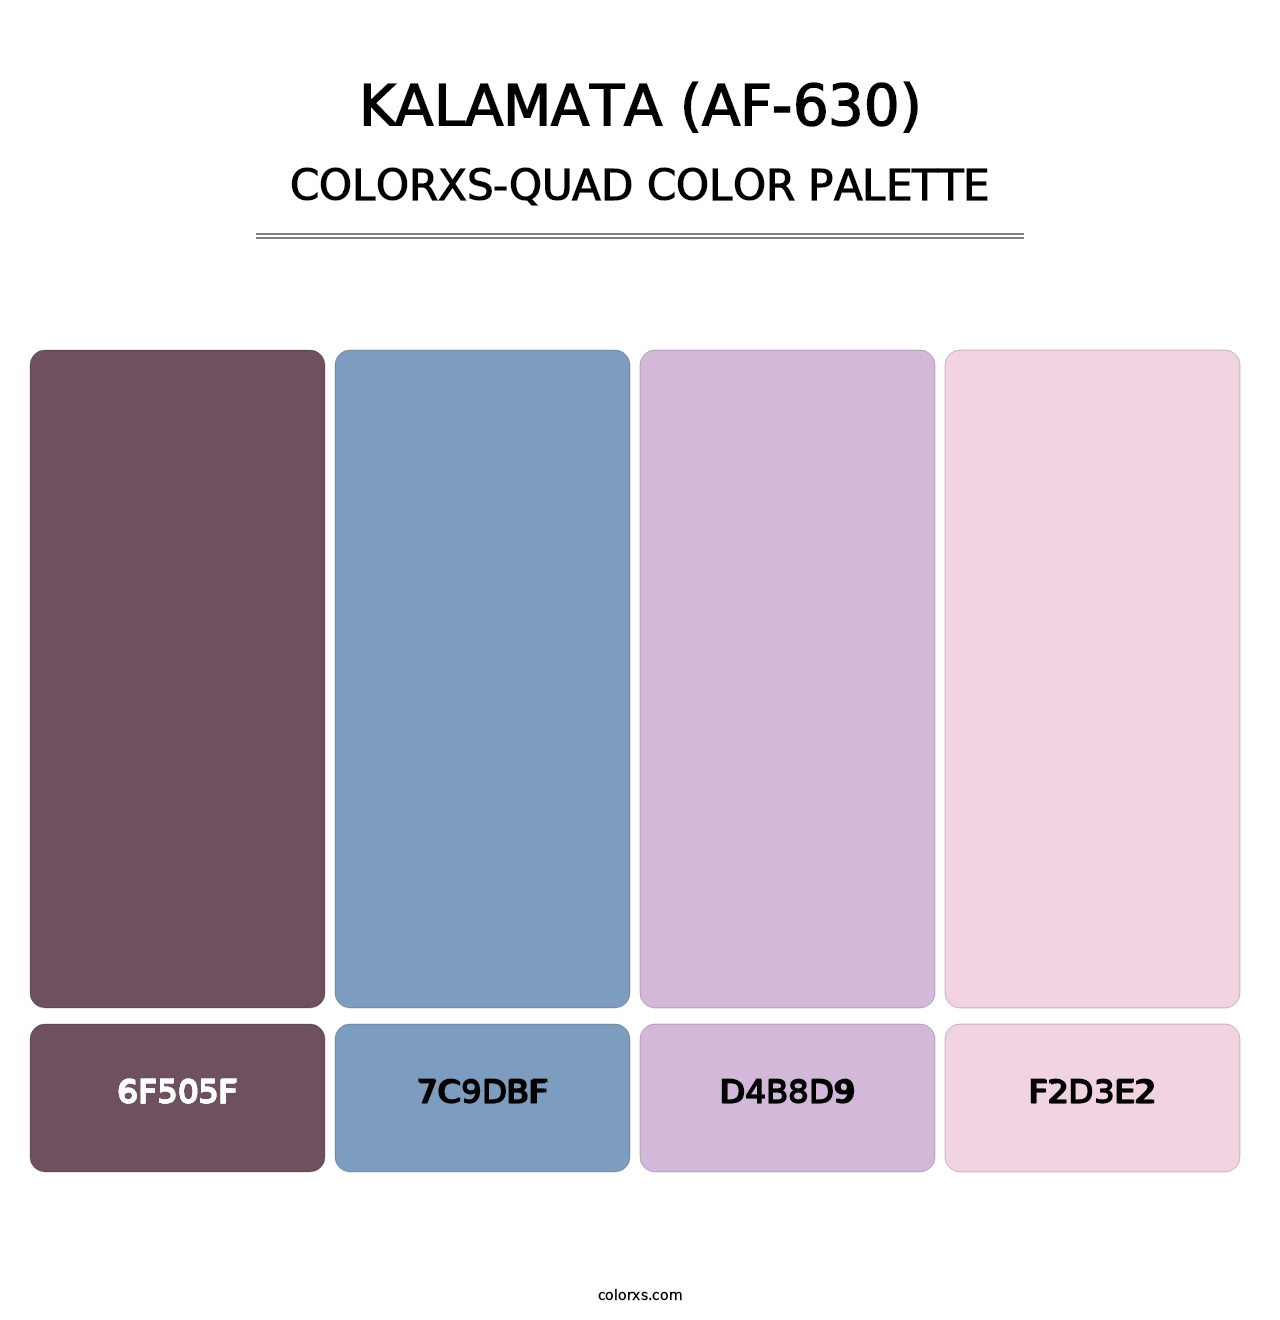 Kalamata (AF-630) - Colorxs Quad Palette